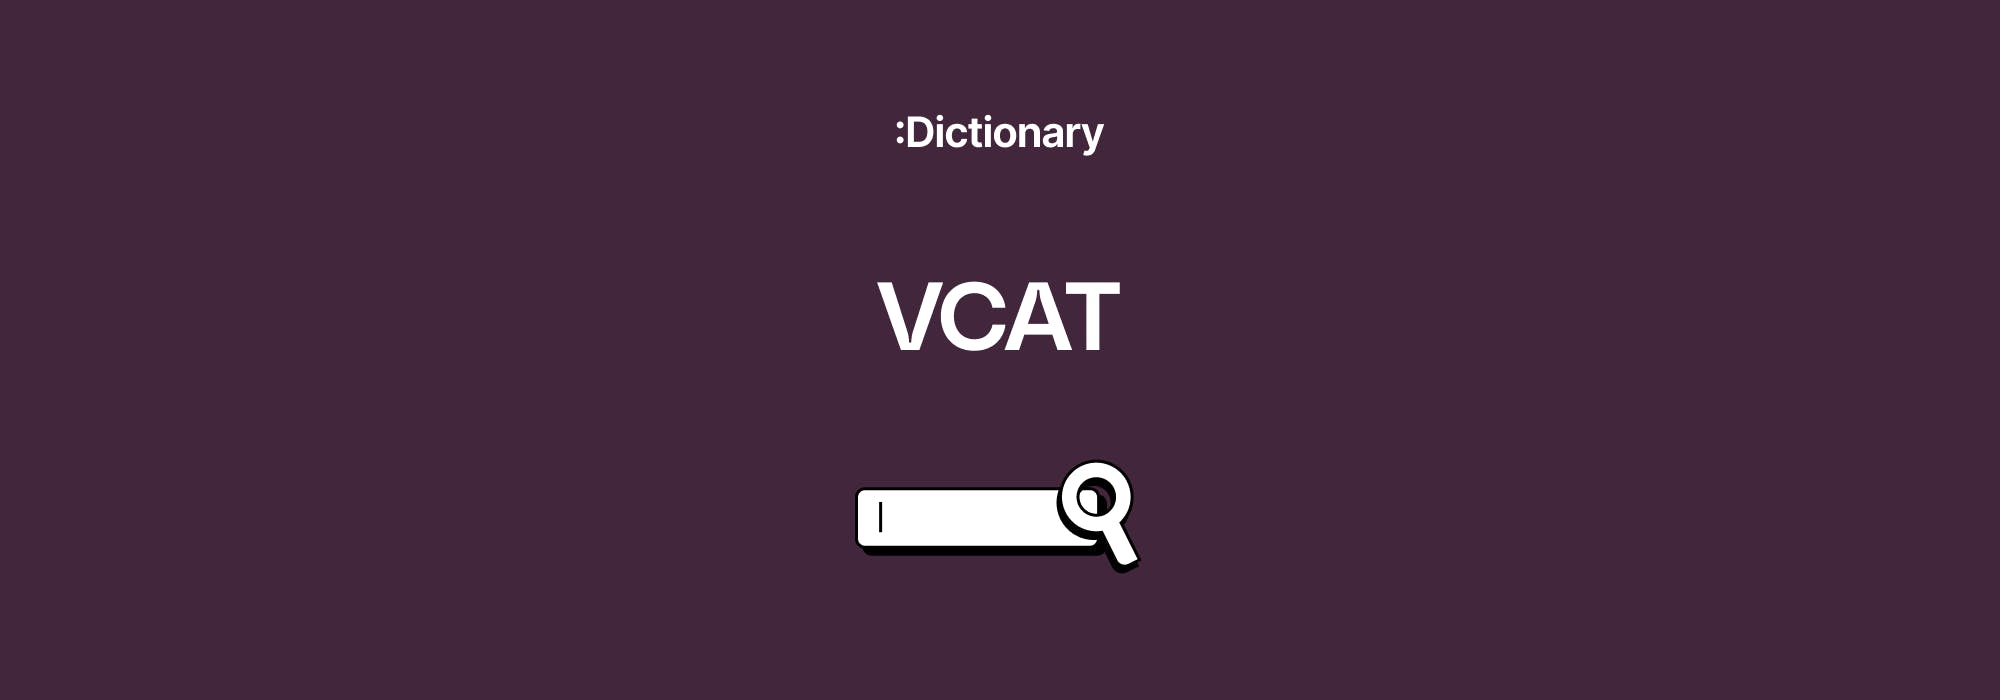 Explaining the term VCAT